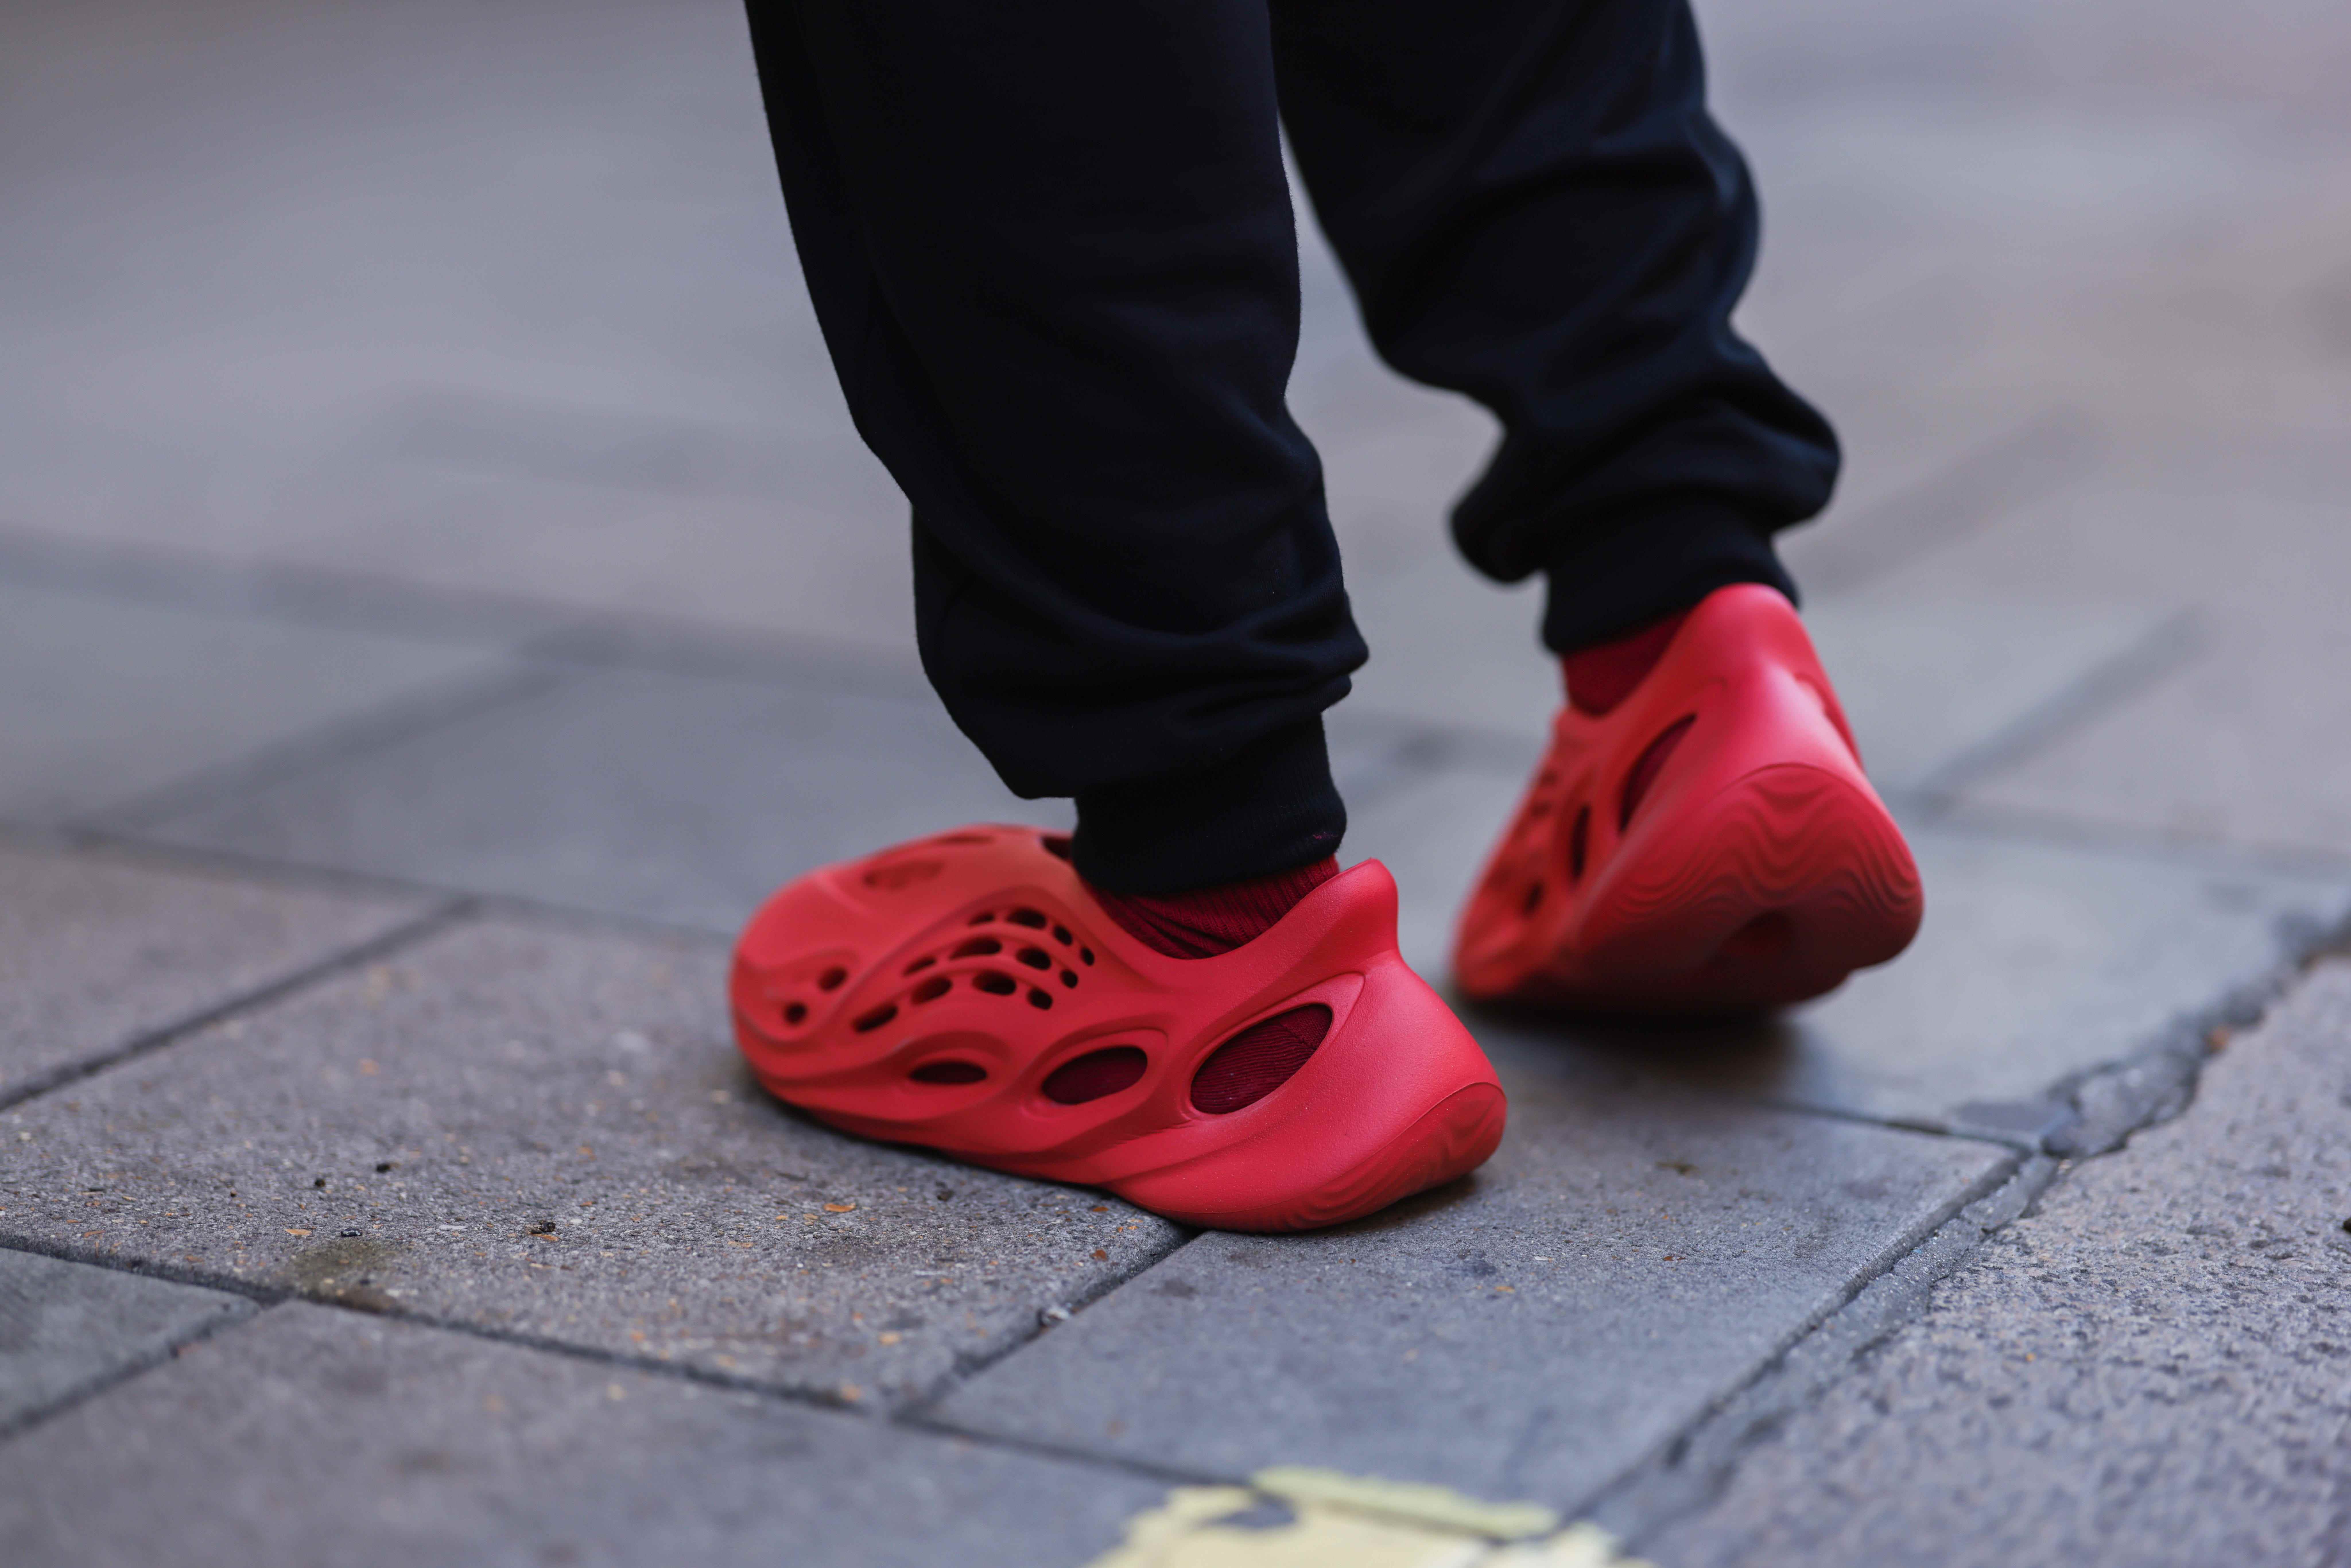 Füße tragen rote Yeezy Adidas Foam Runner Schuhe